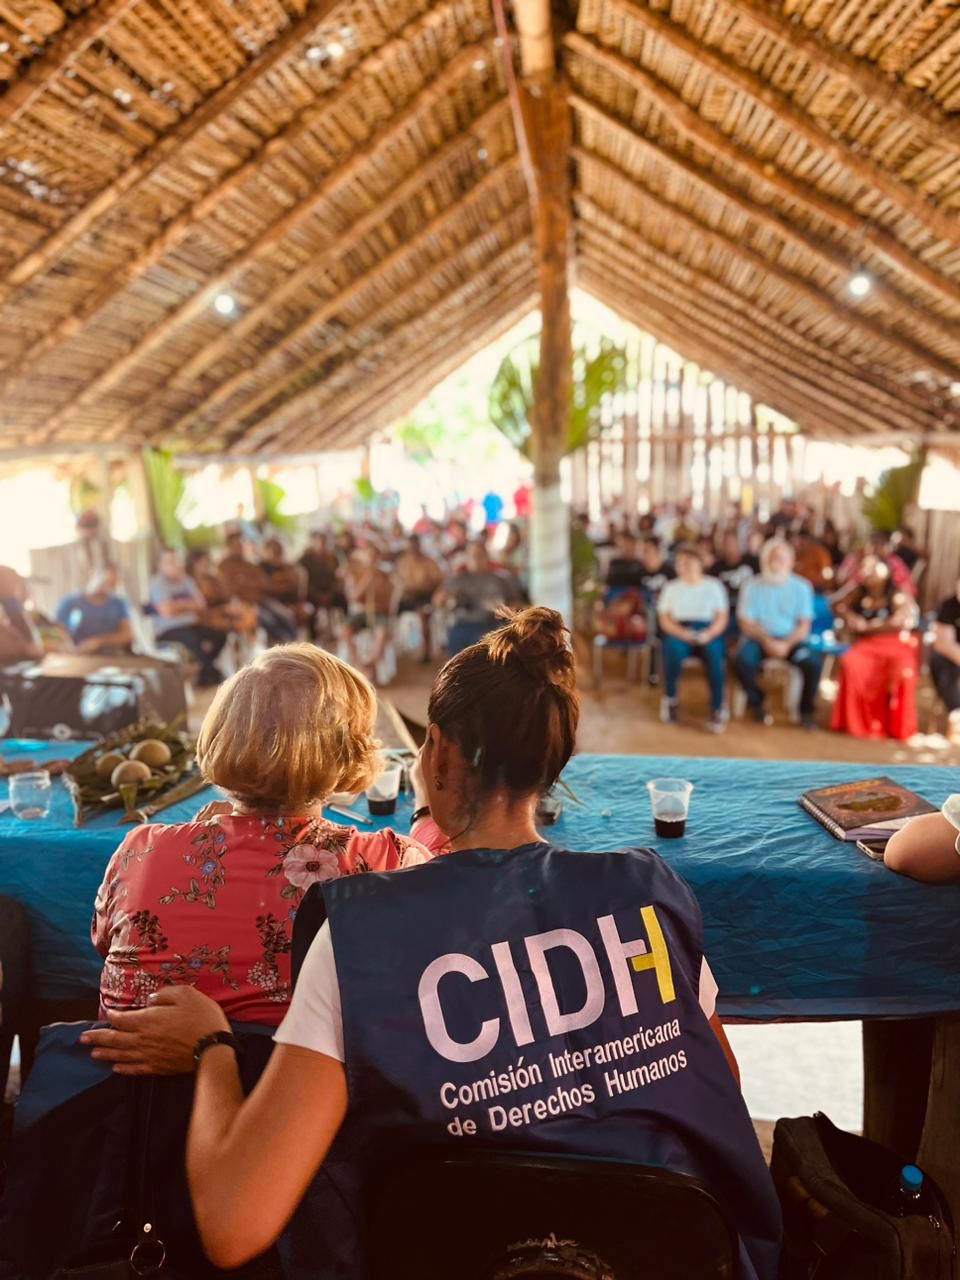 AmazoniAlerta contribui com investigação da CIDH em Araribóia